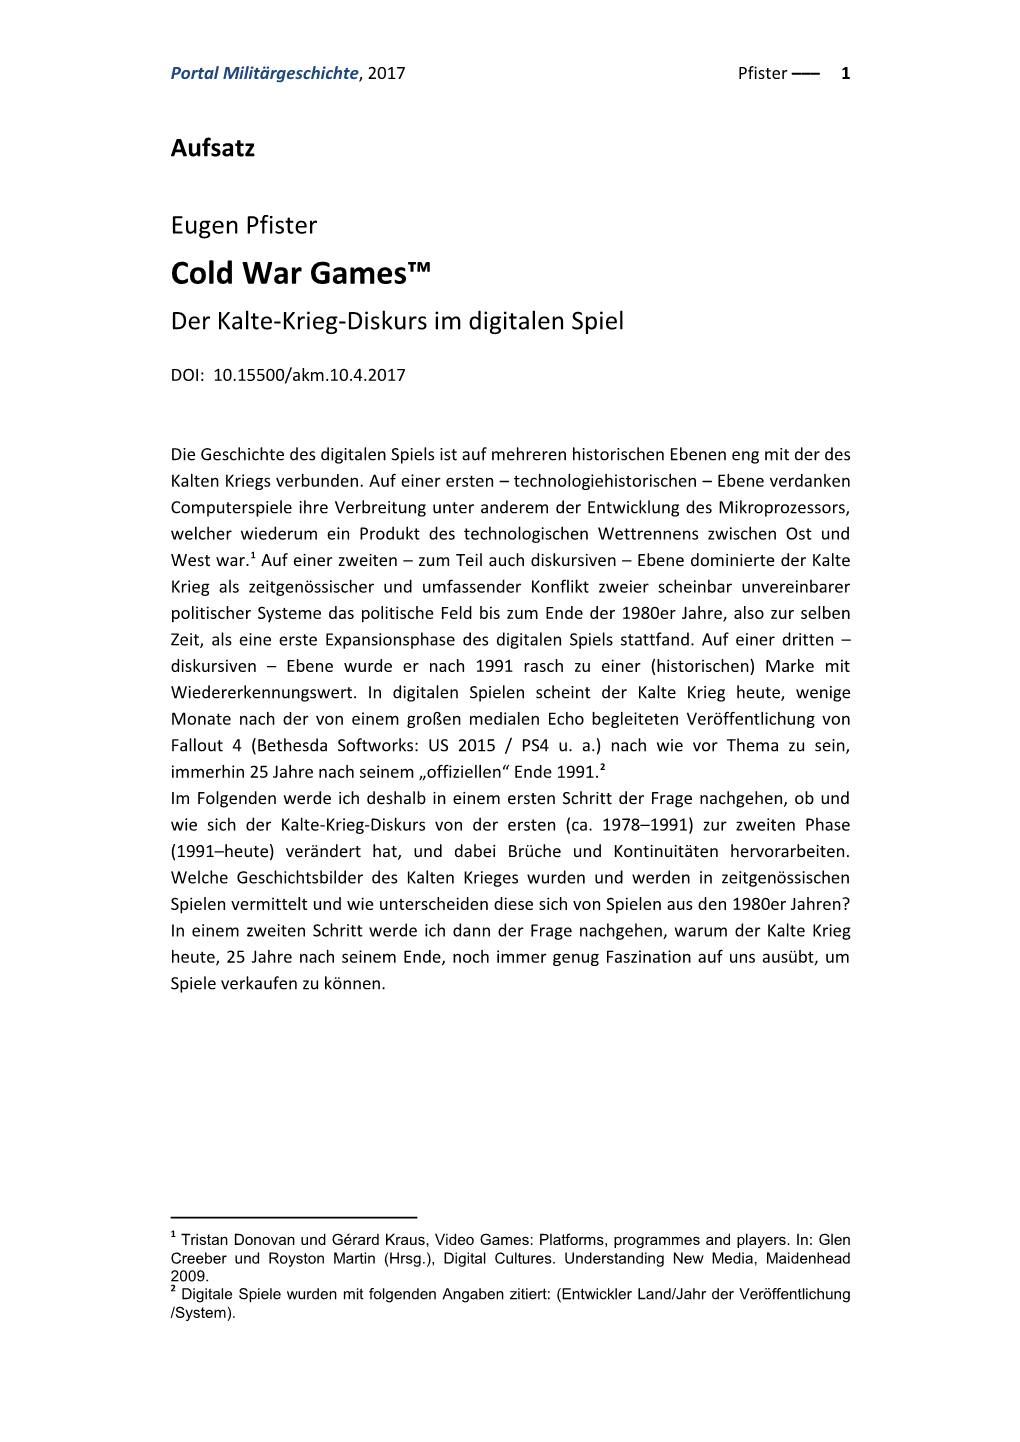 Cold War Games™ Der Kalte-Krieg-Diskurs Im Digitalen Spiel